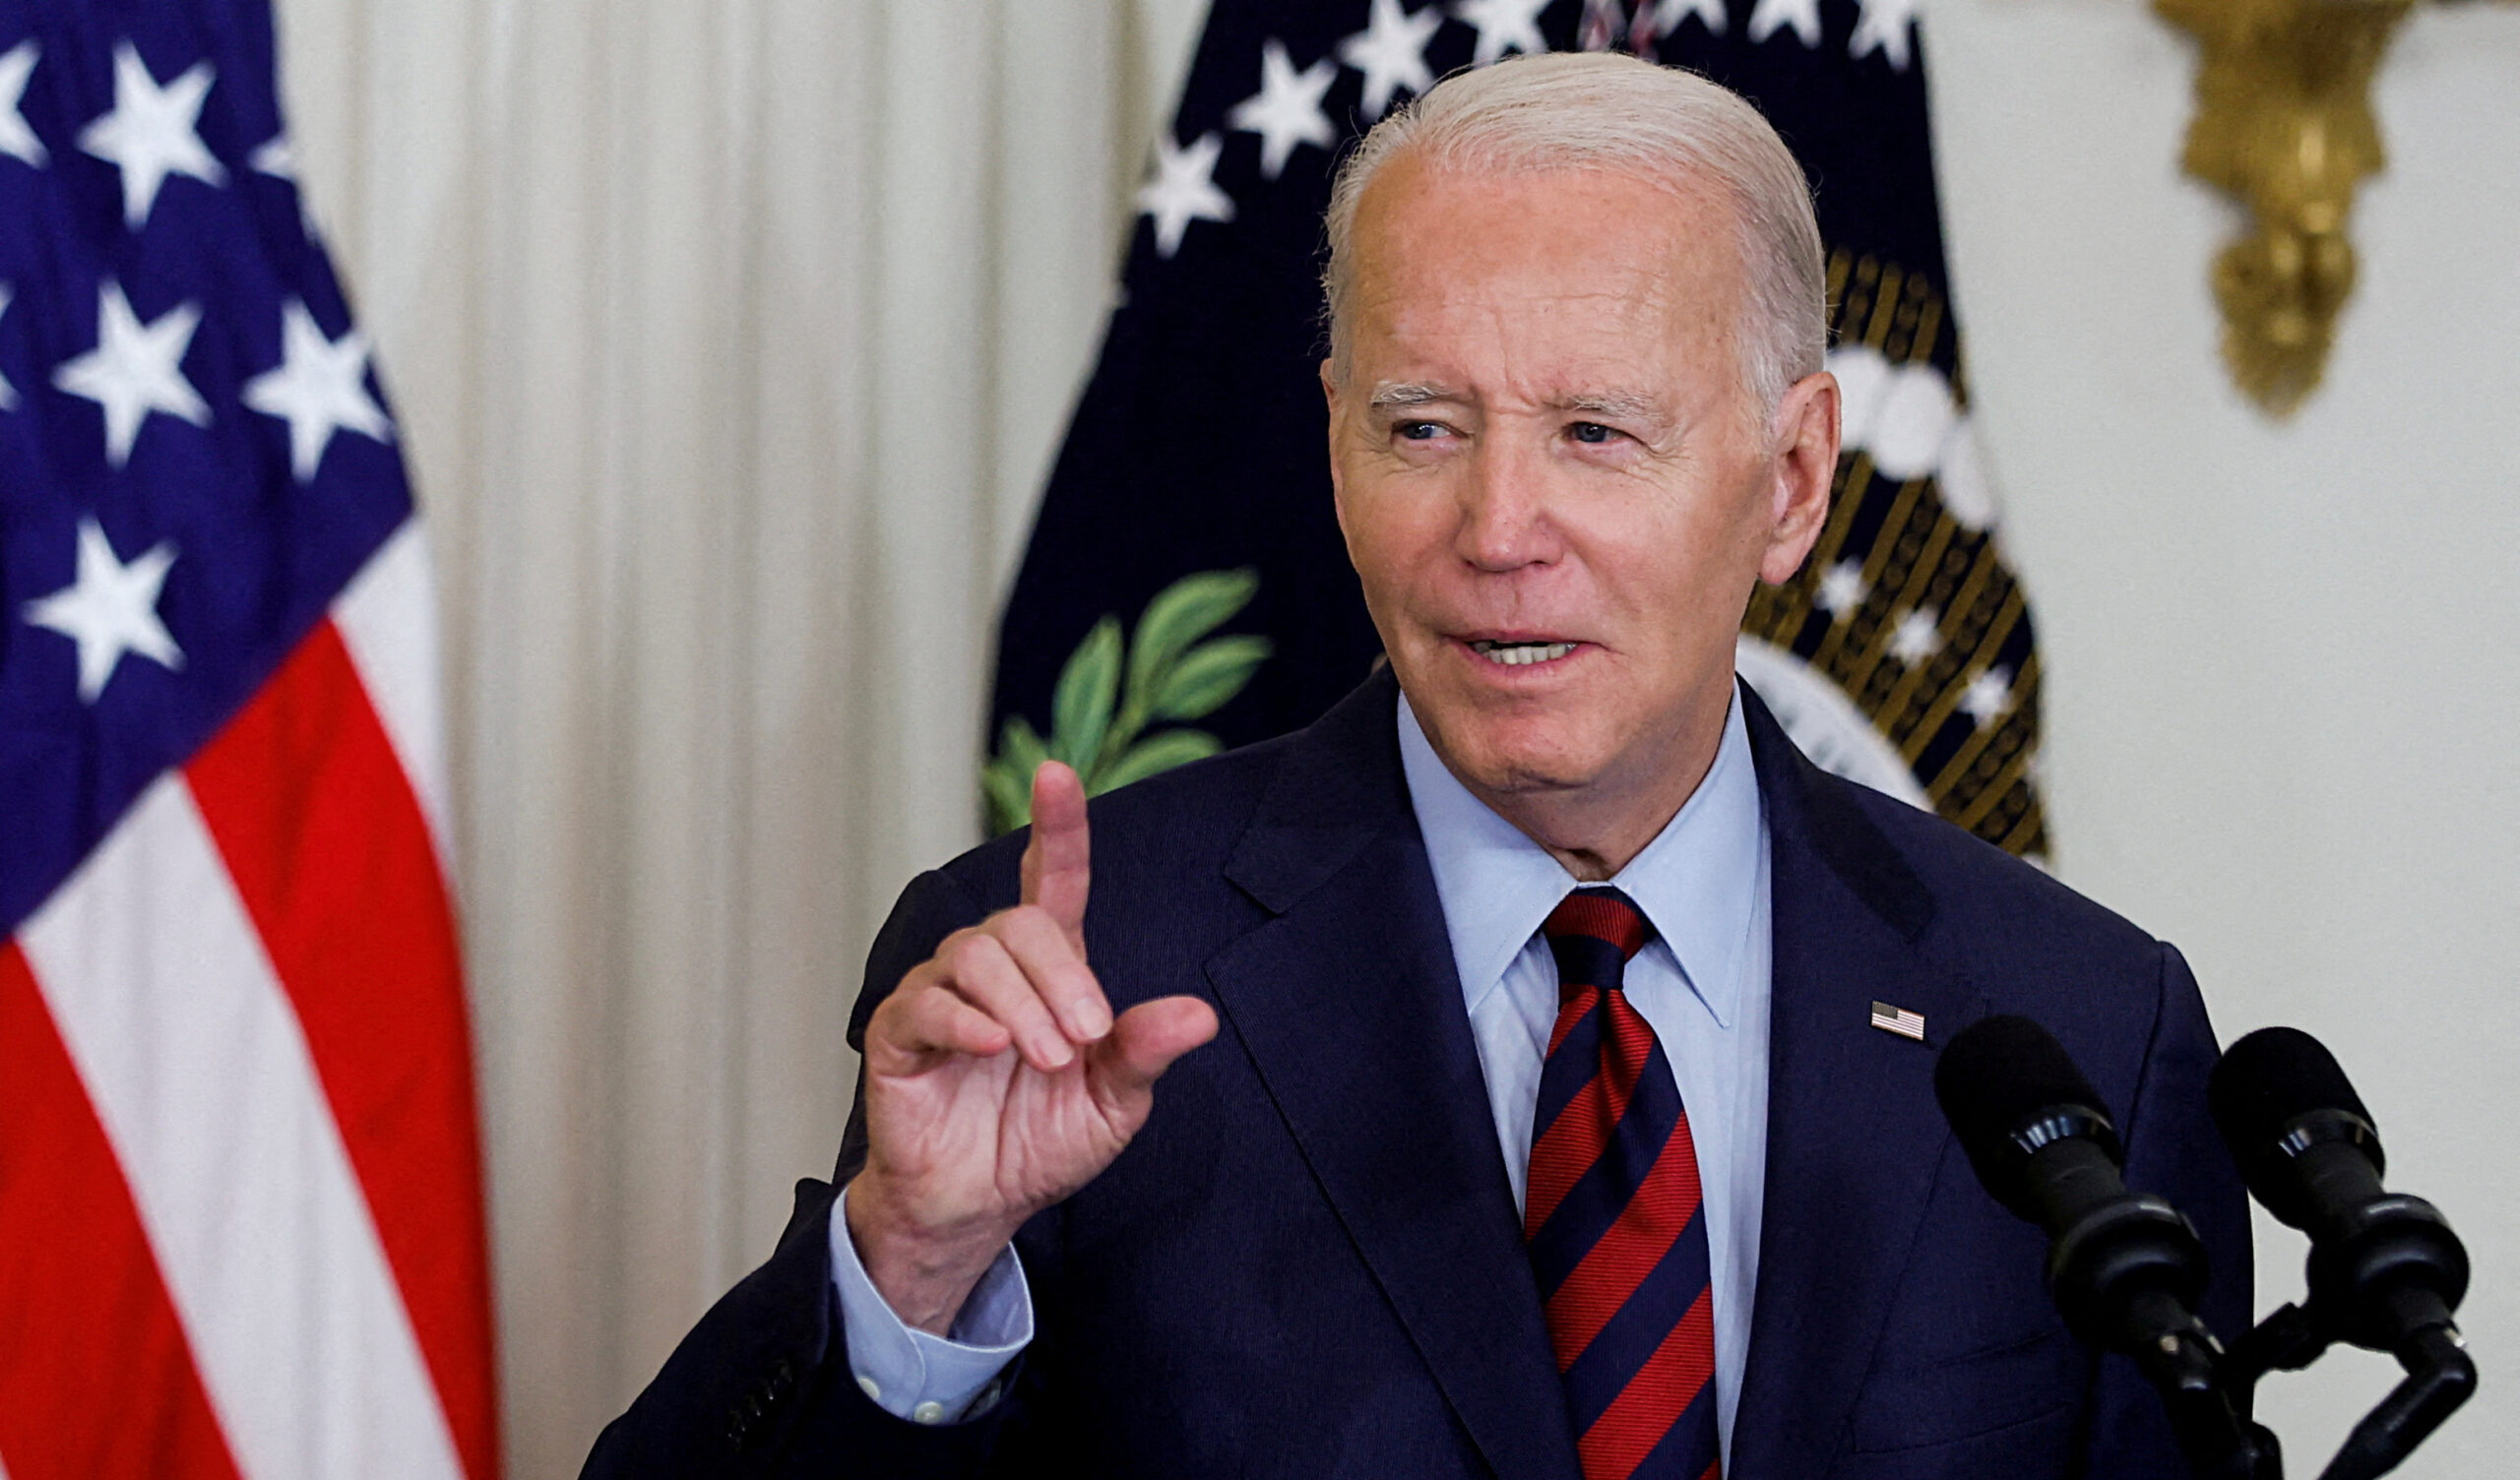 Biden ipotizza un negoziato diretto con Hamas per la liberazione dei cinque ostaggi americani